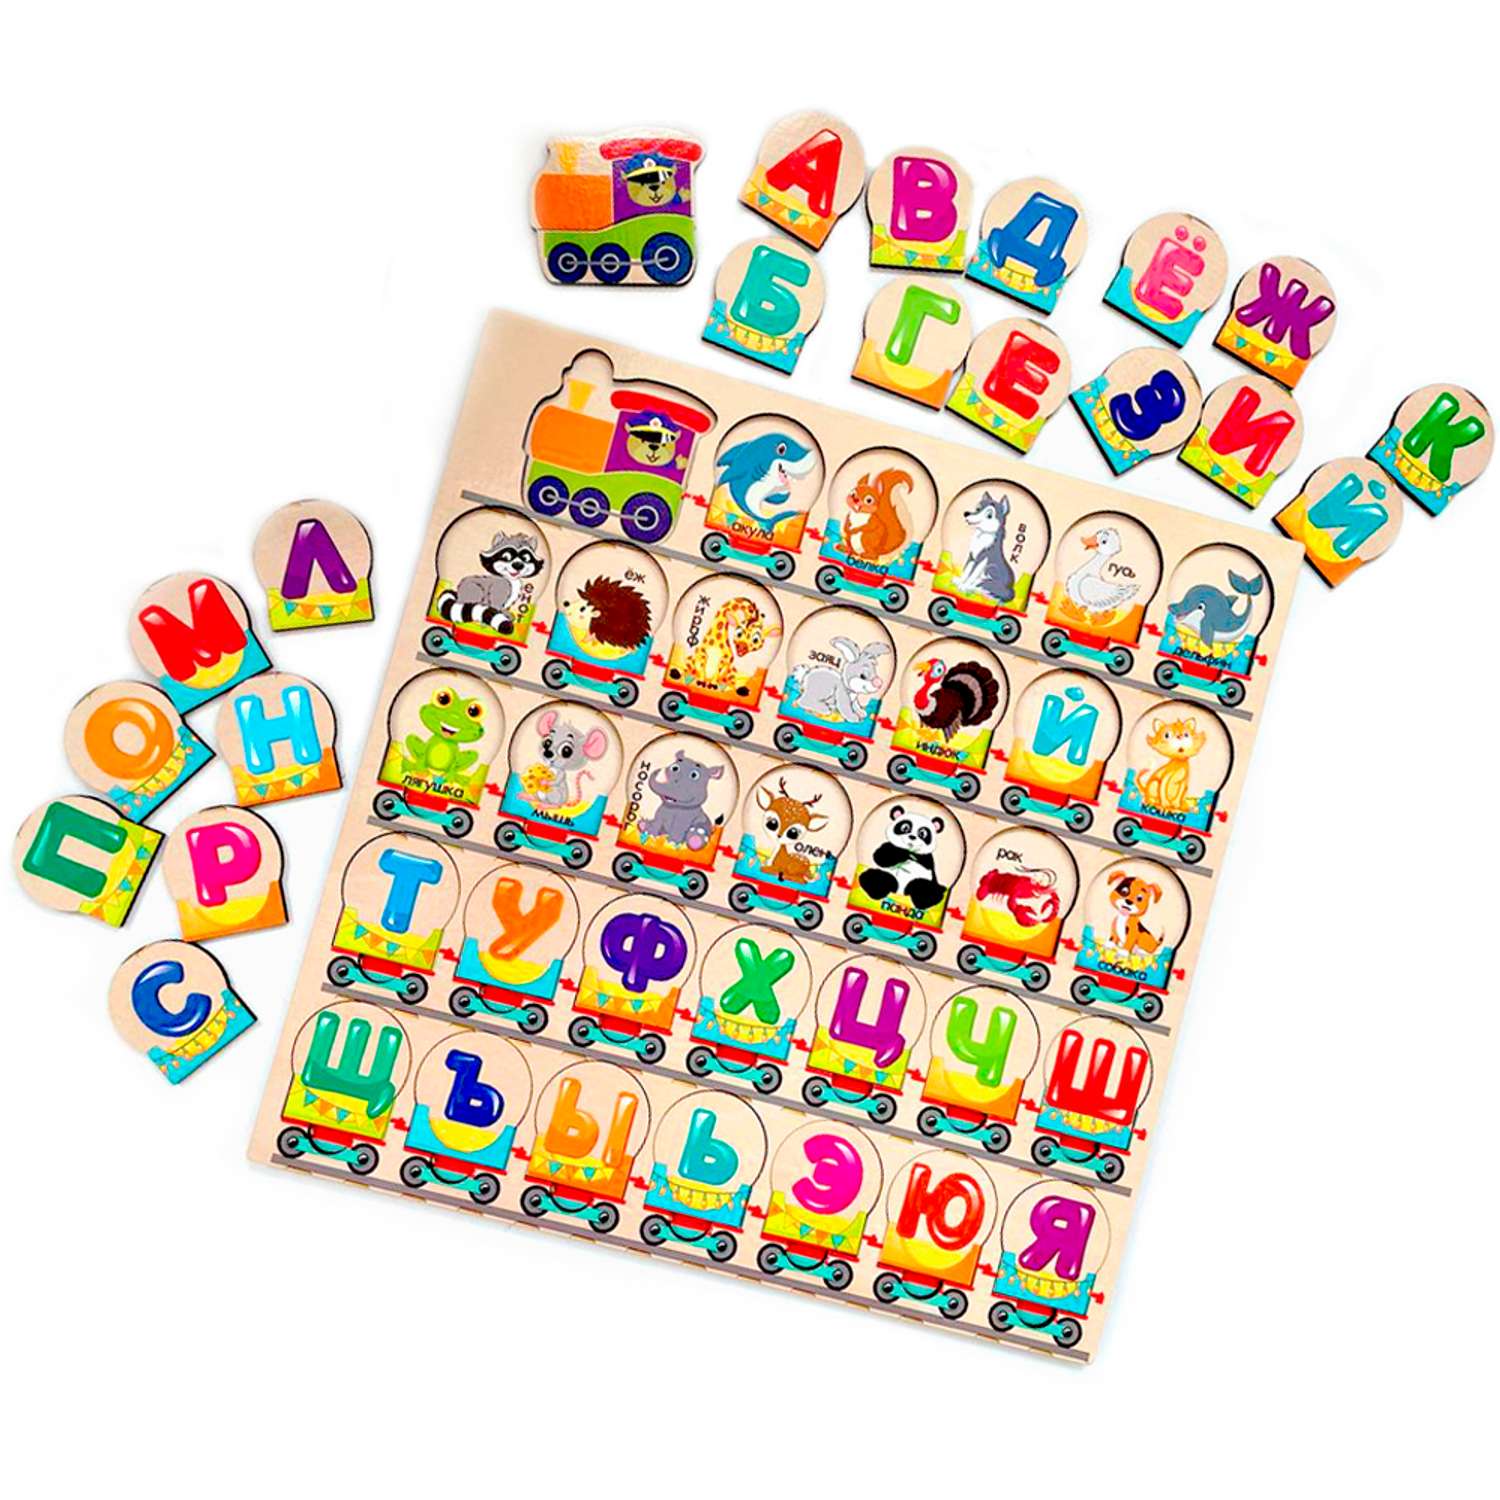 Игровой набор Parrot Carrot рамки вкладыши для малышей Паровозики: буквы и цифры 2 шт - фото 3